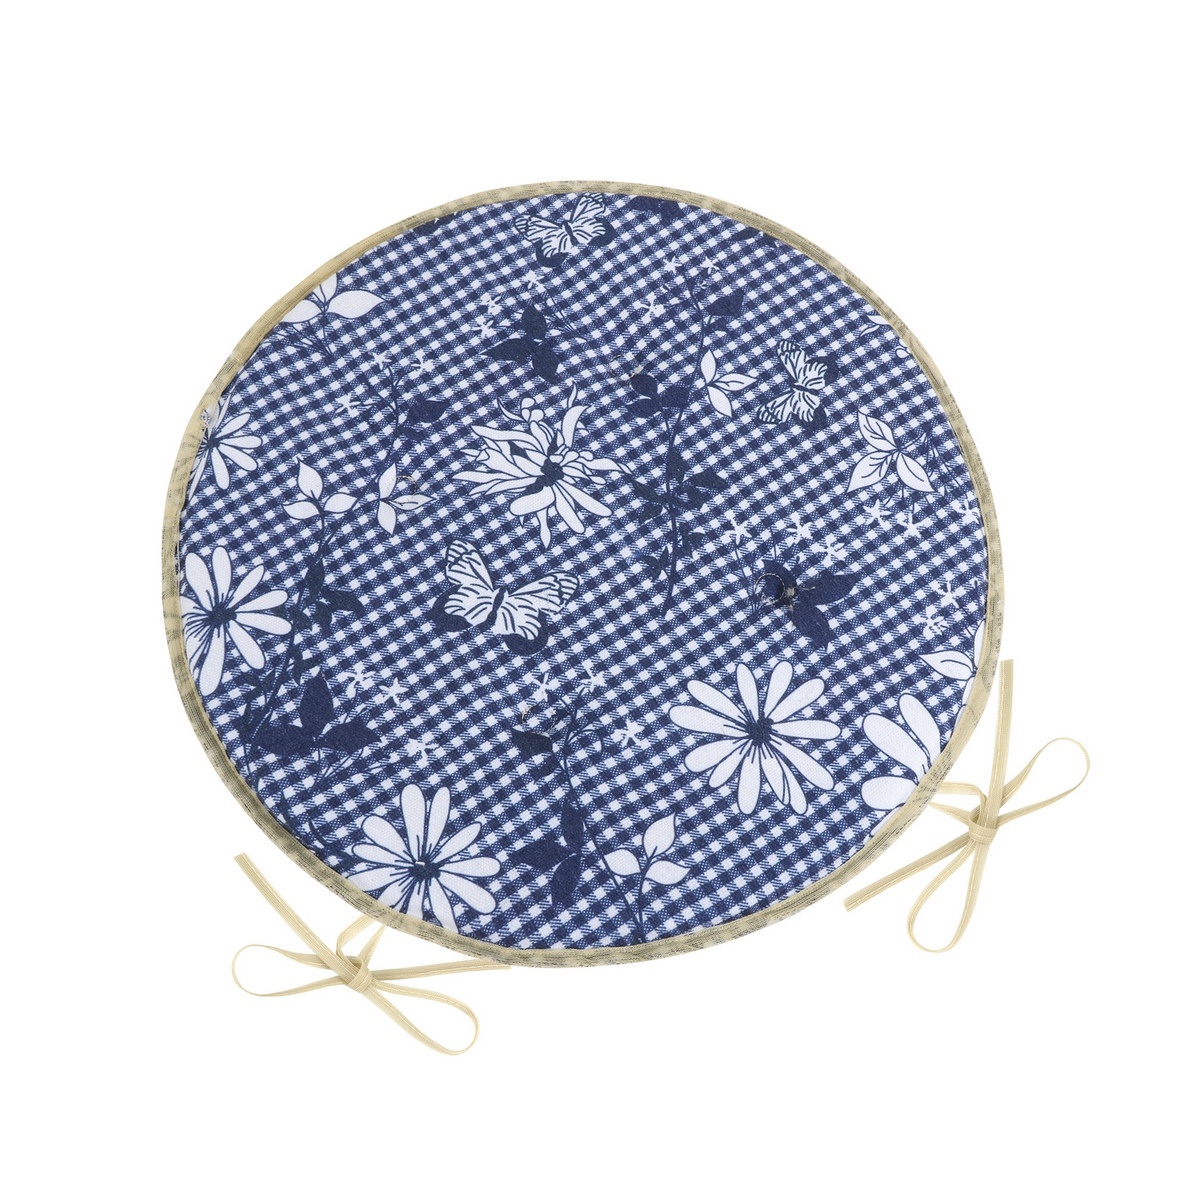 Bellatex Sedák DITA okrúhly hladký Kocka s kvetom modrá, 40 cm